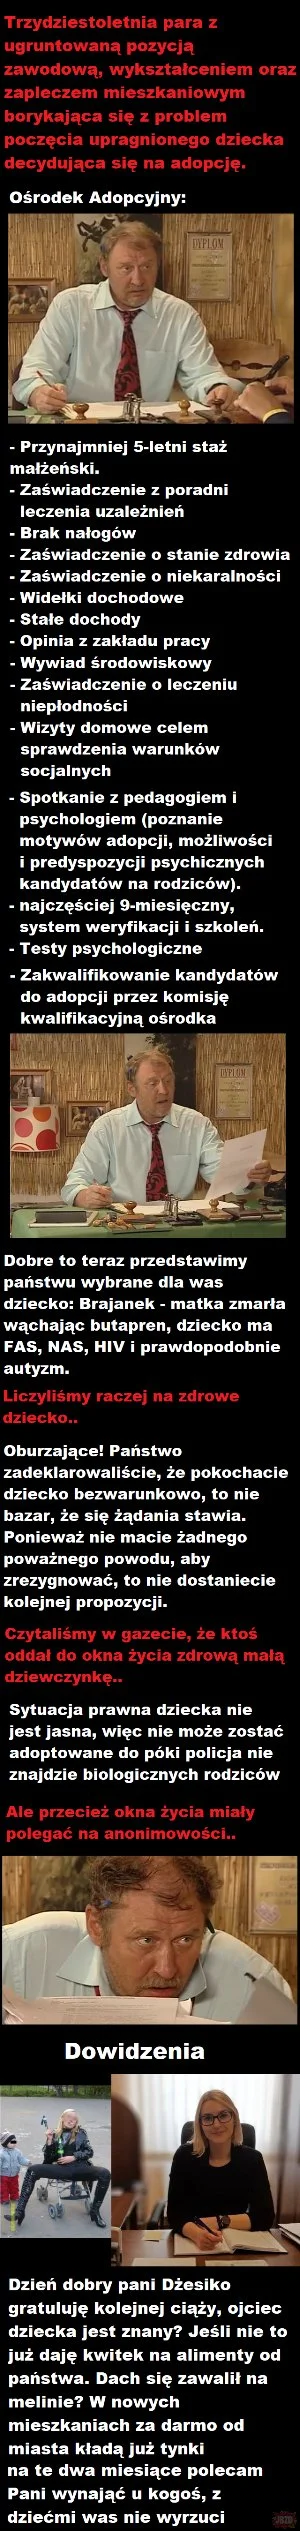 Own3d_23 - Polskie realia

#krajzdykty #brajan #adopcja #polska